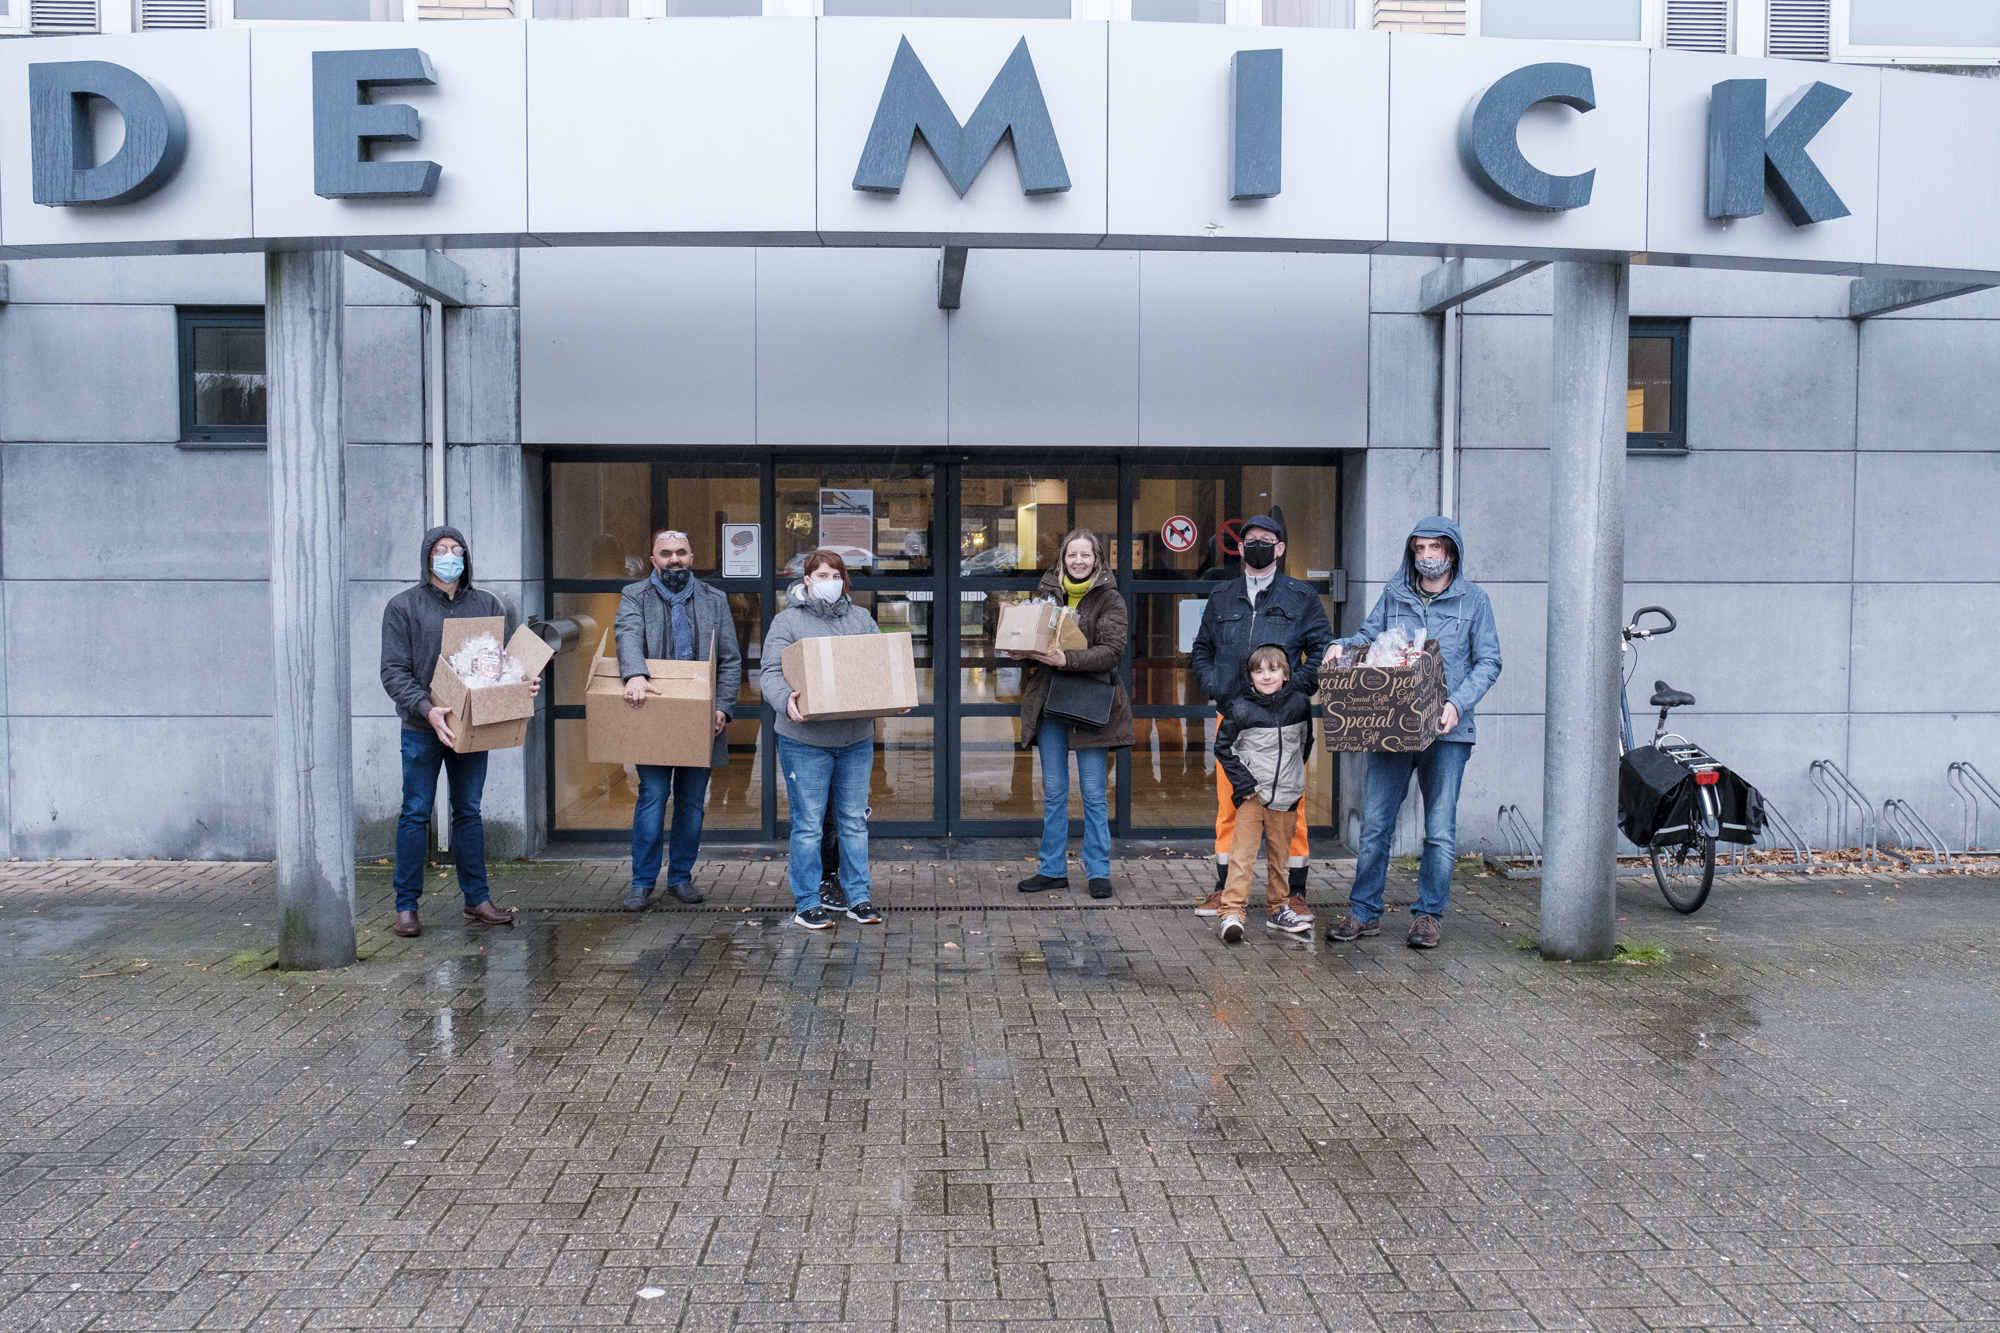 Antwerpse dokwerkers solidair met personeel van woonzorgcentrum De Mick